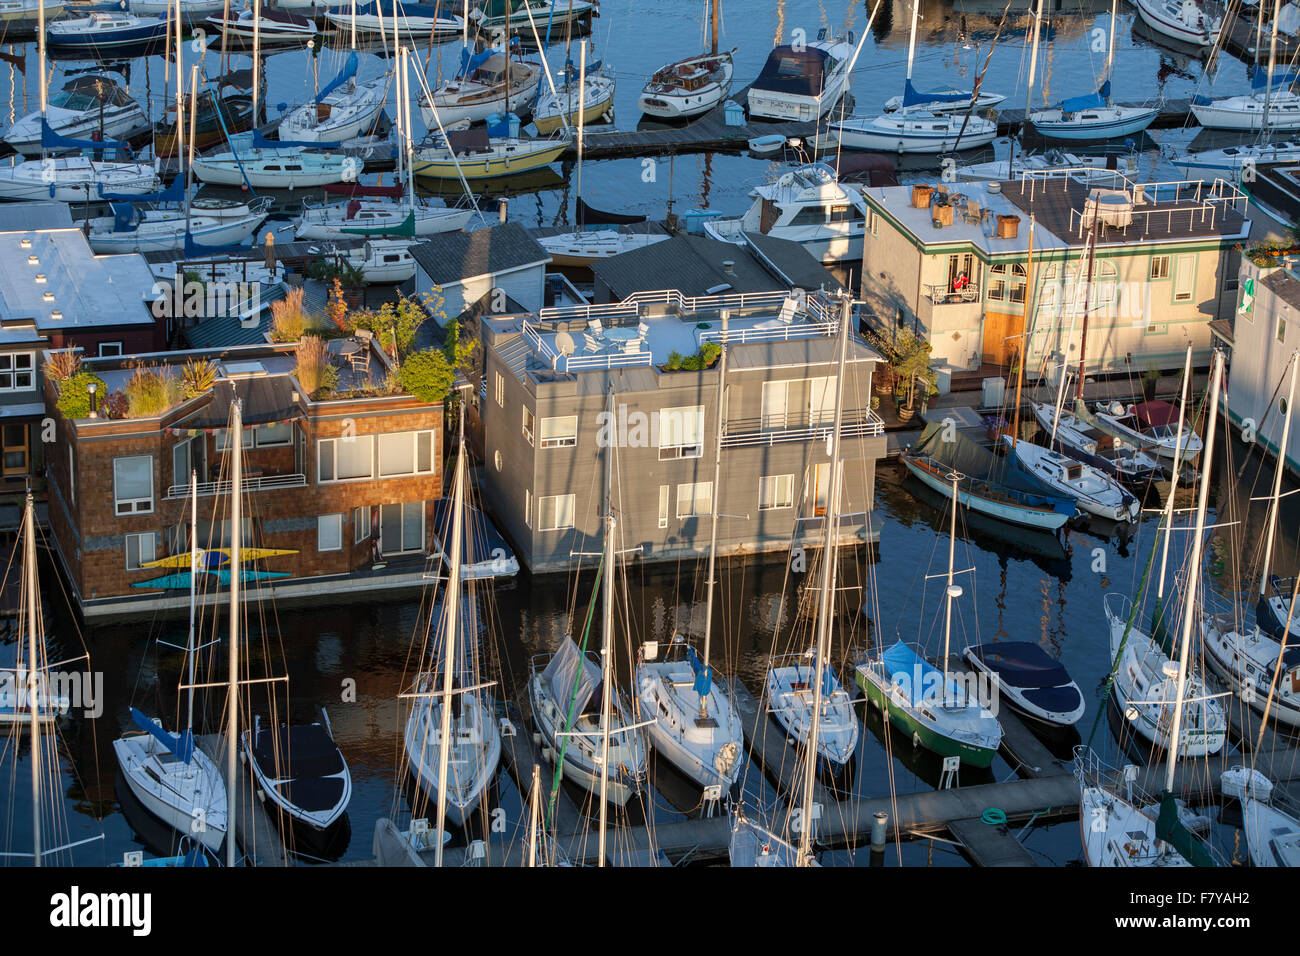 Houseboats, sailboats, Lake Union, Seattle, Washington, United States Stock Photo